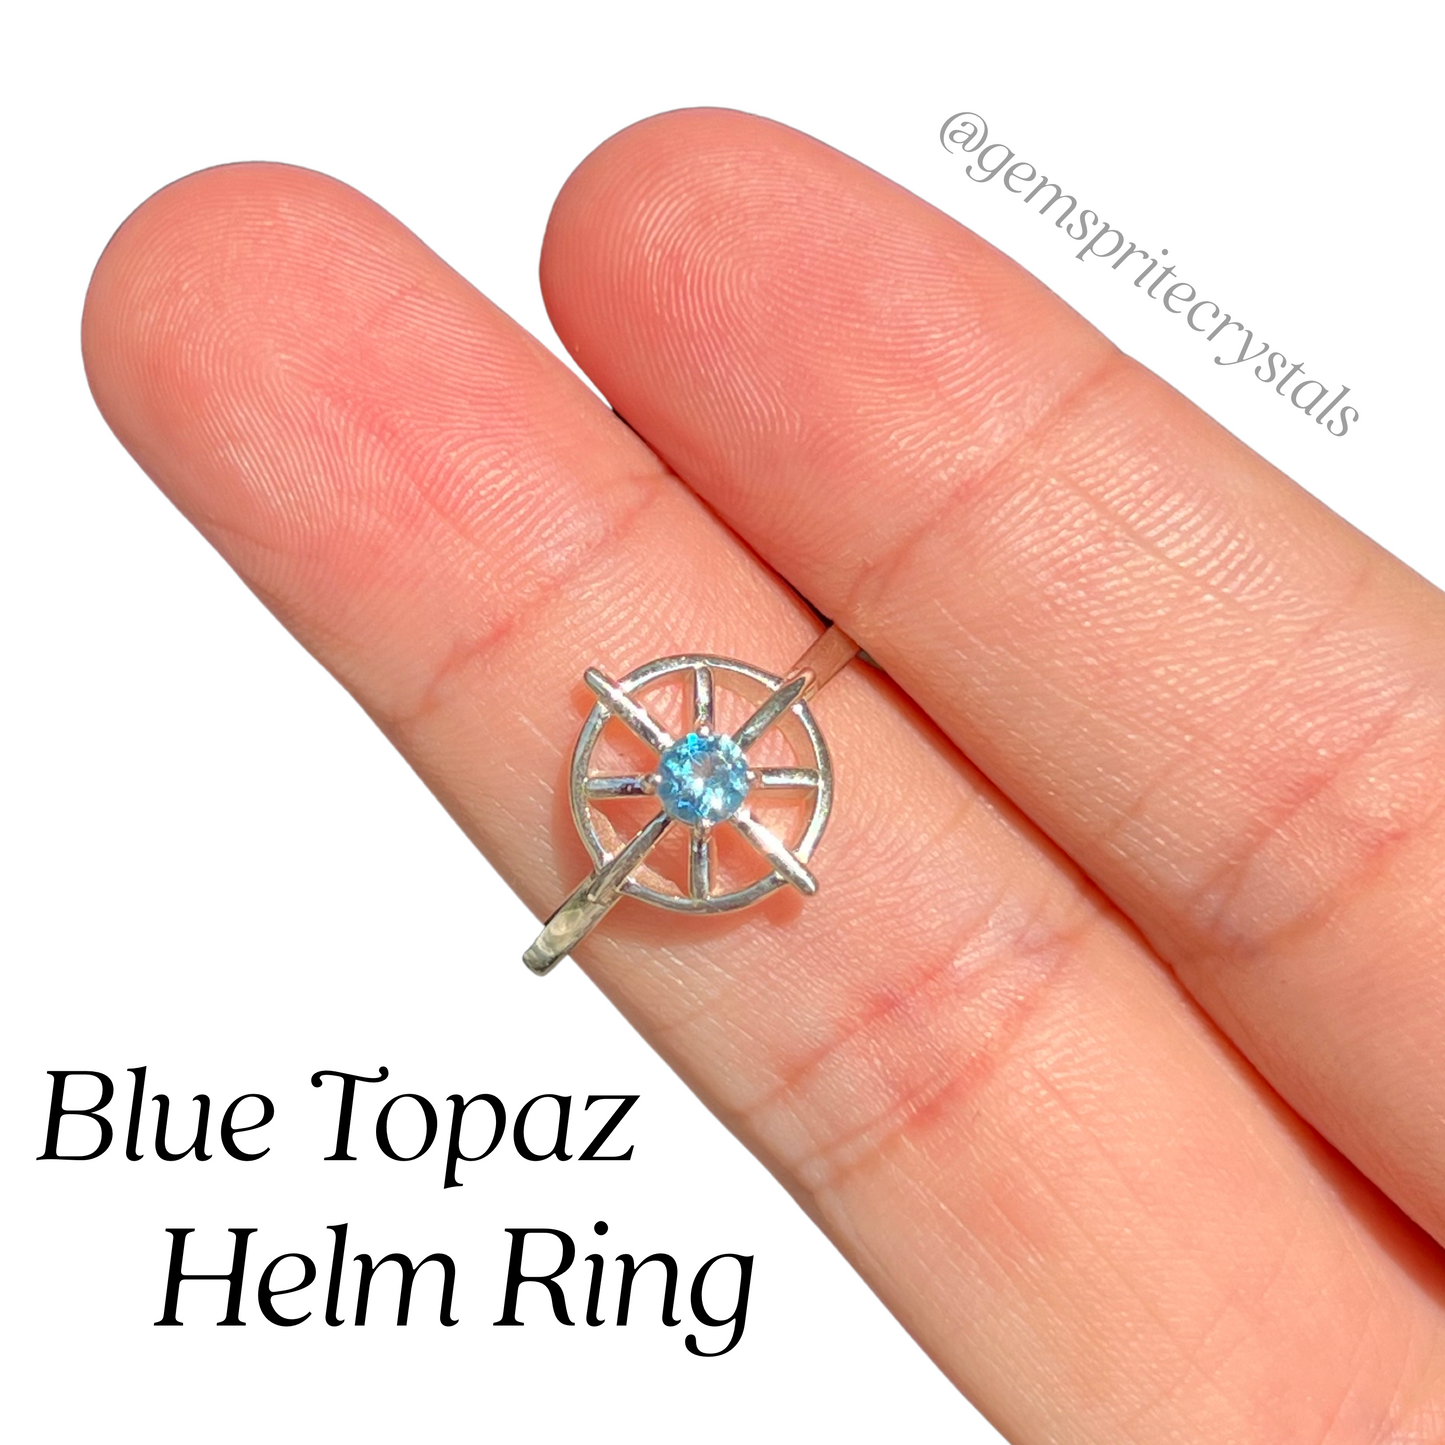 Blue Topaz Helm Ring